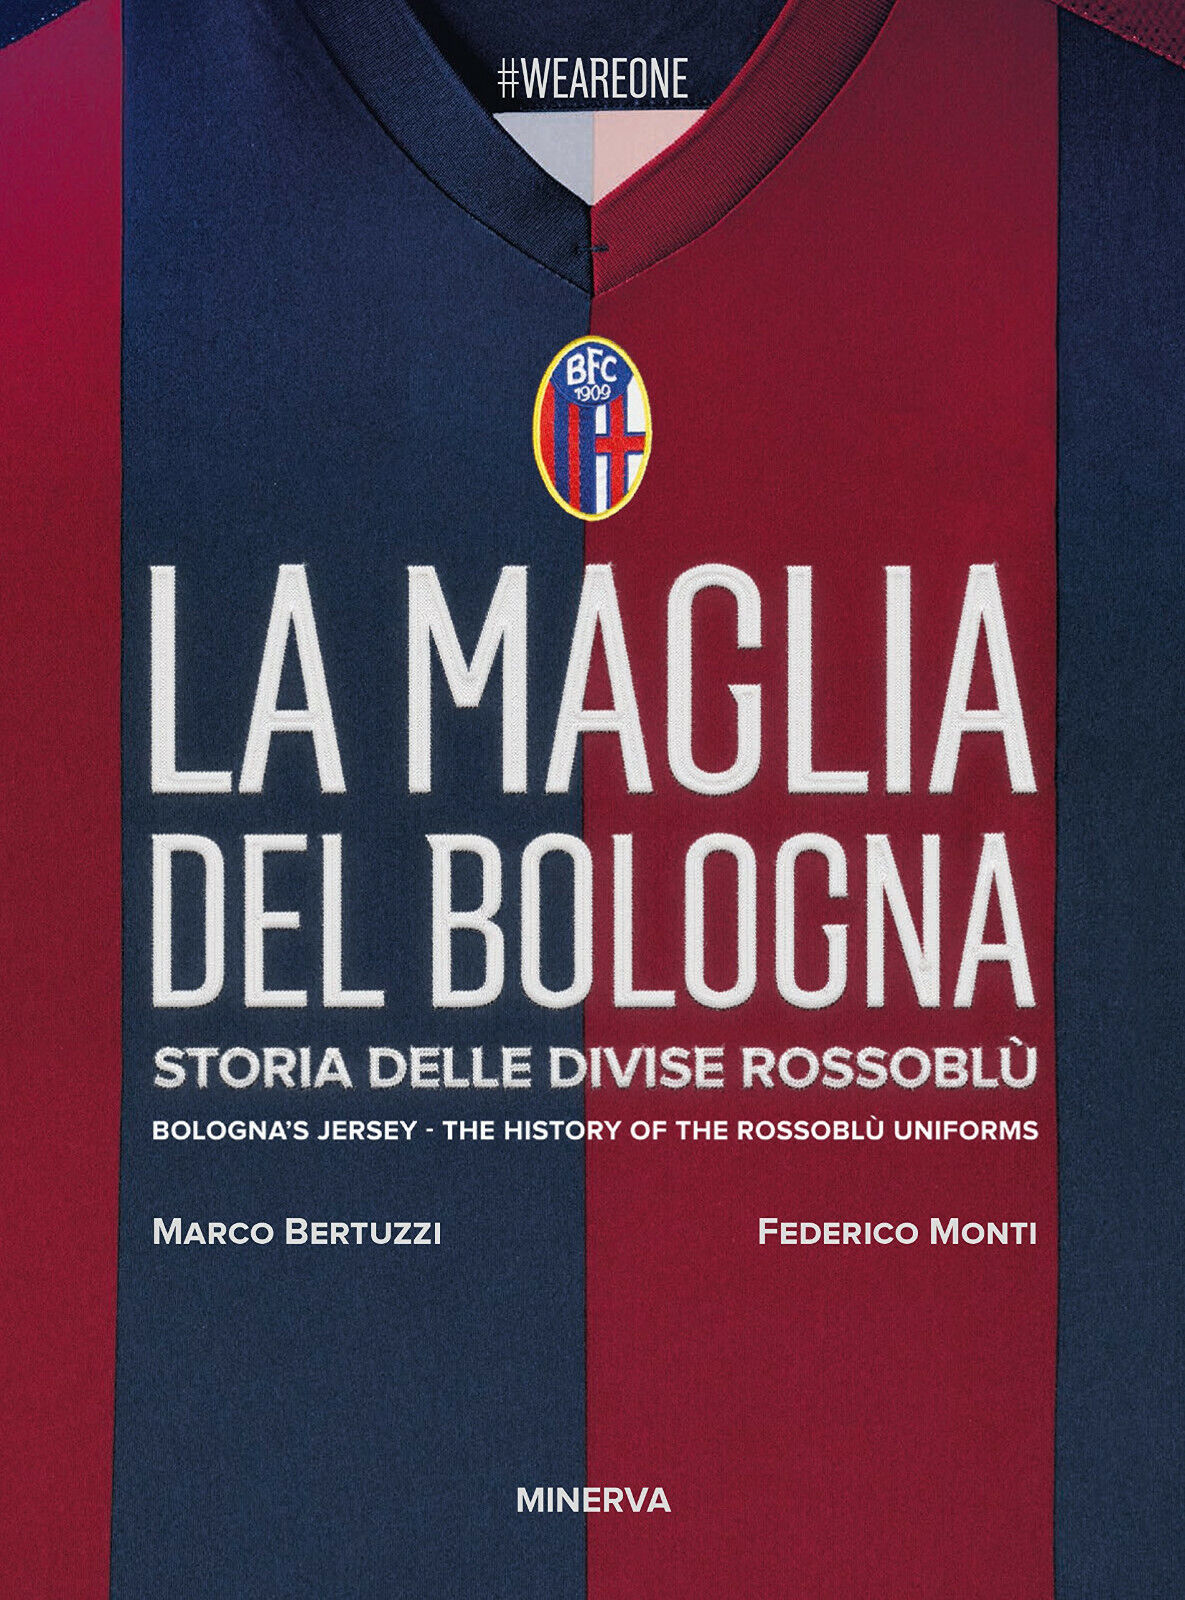 La maglia del Bologna 1909-2016 - Federico Monti, Marco Bertuzzi - 2017